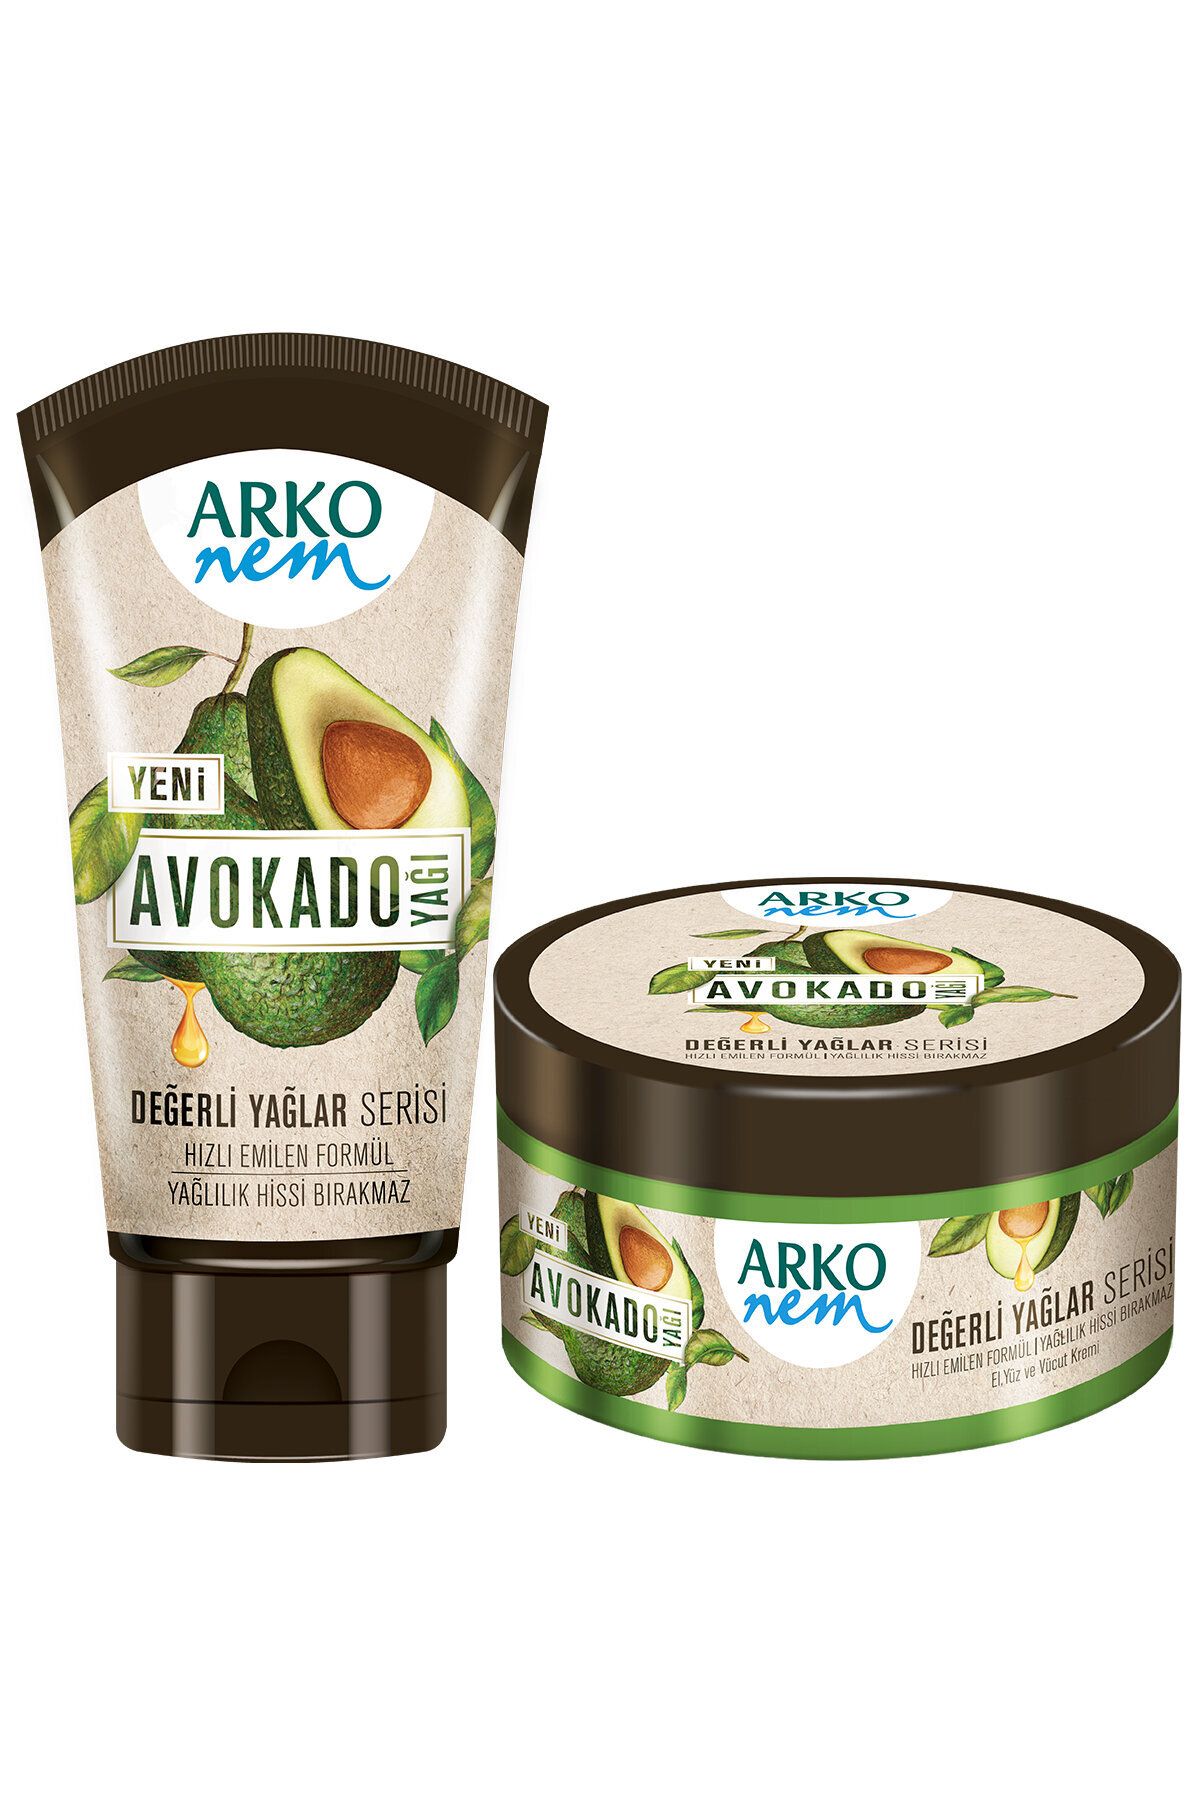 Arko Nem Değerli Yağlar Avokado Yağı Nemlendirici Krem 250+60ml